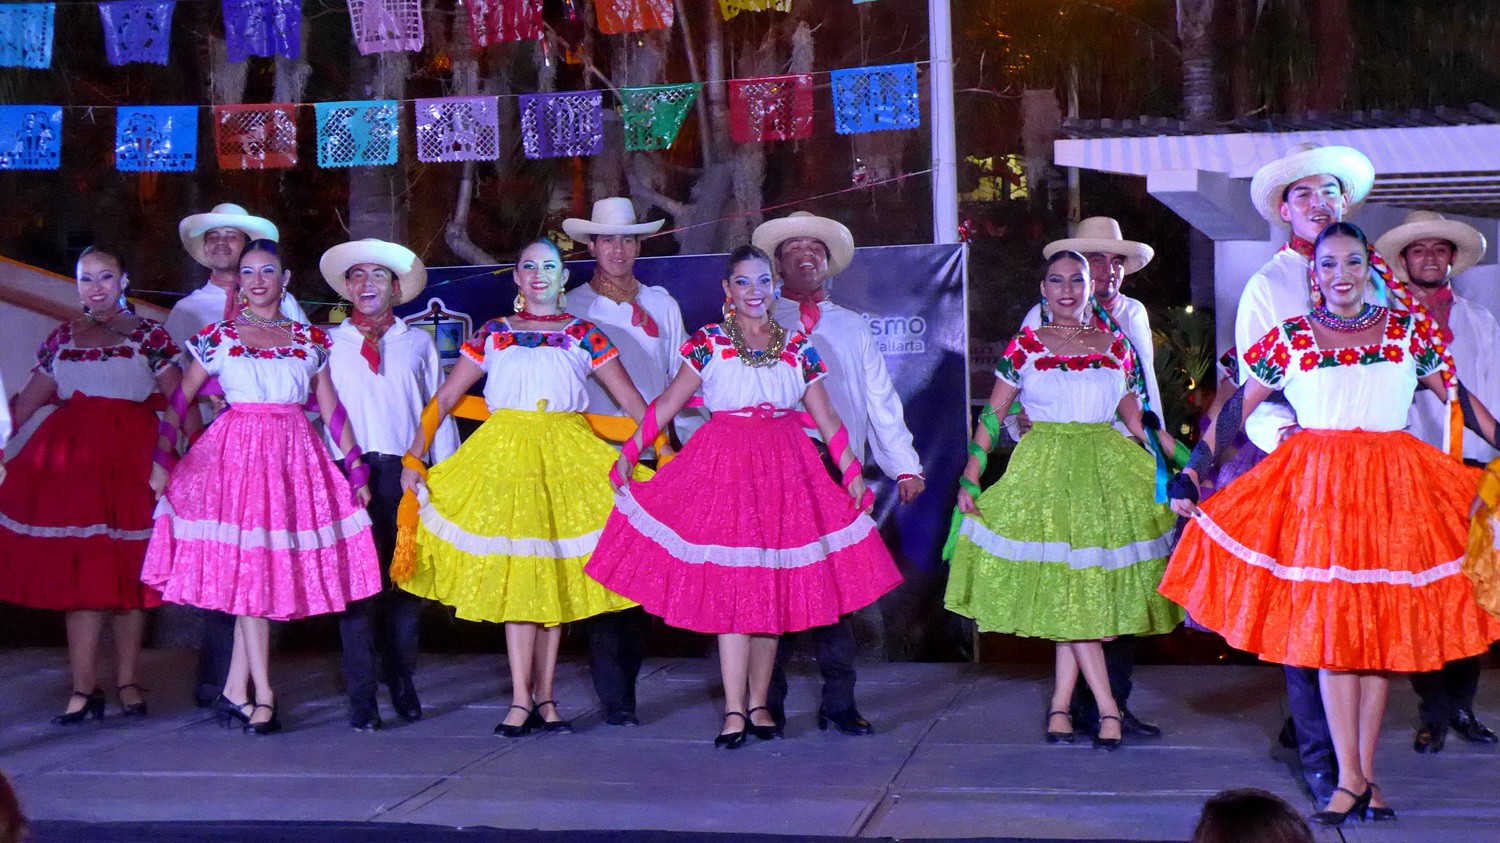 Dancing in Puerto Vallarta